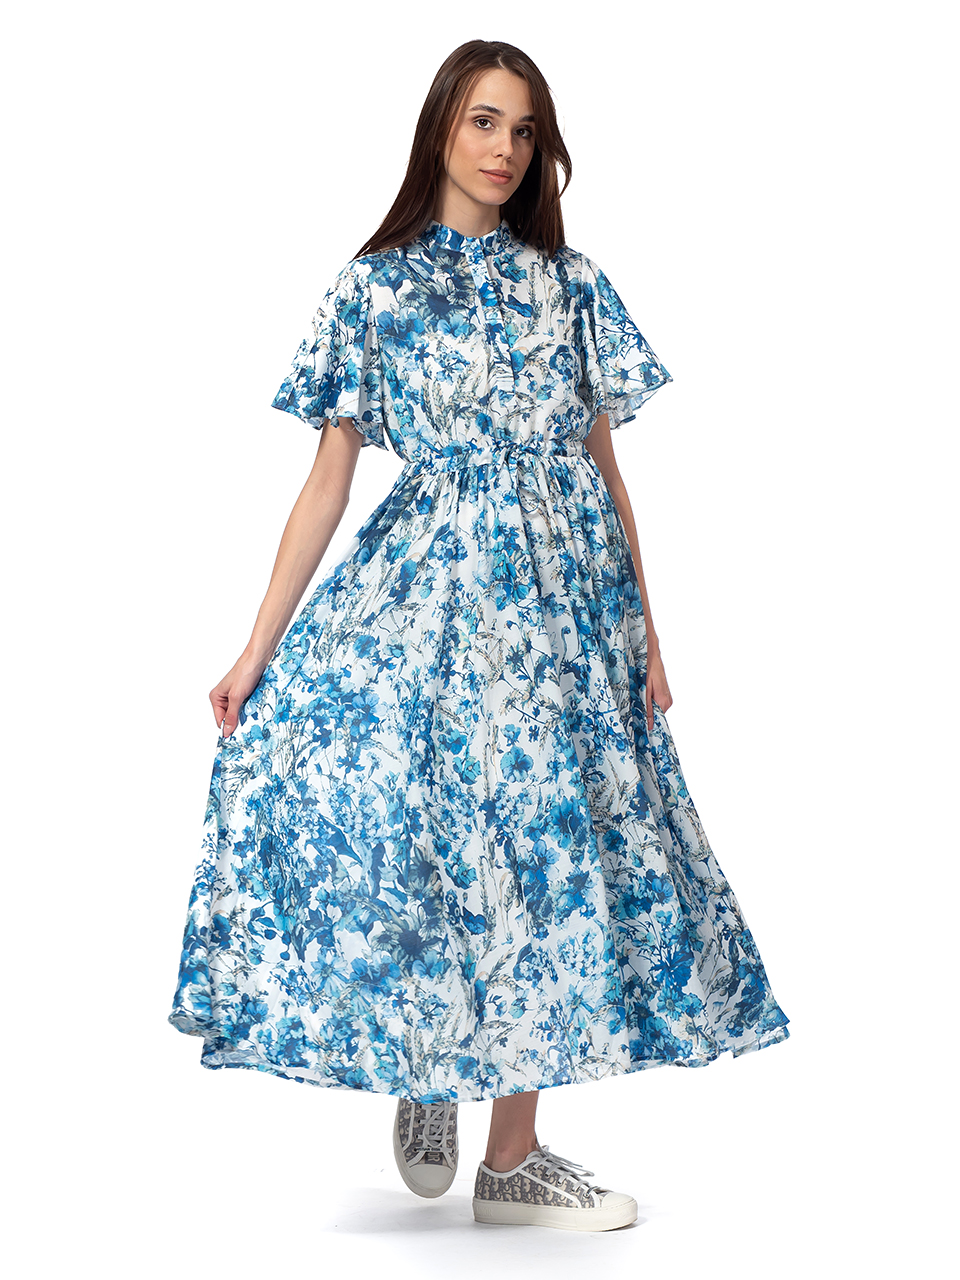 Дамска рокля със сини цветя